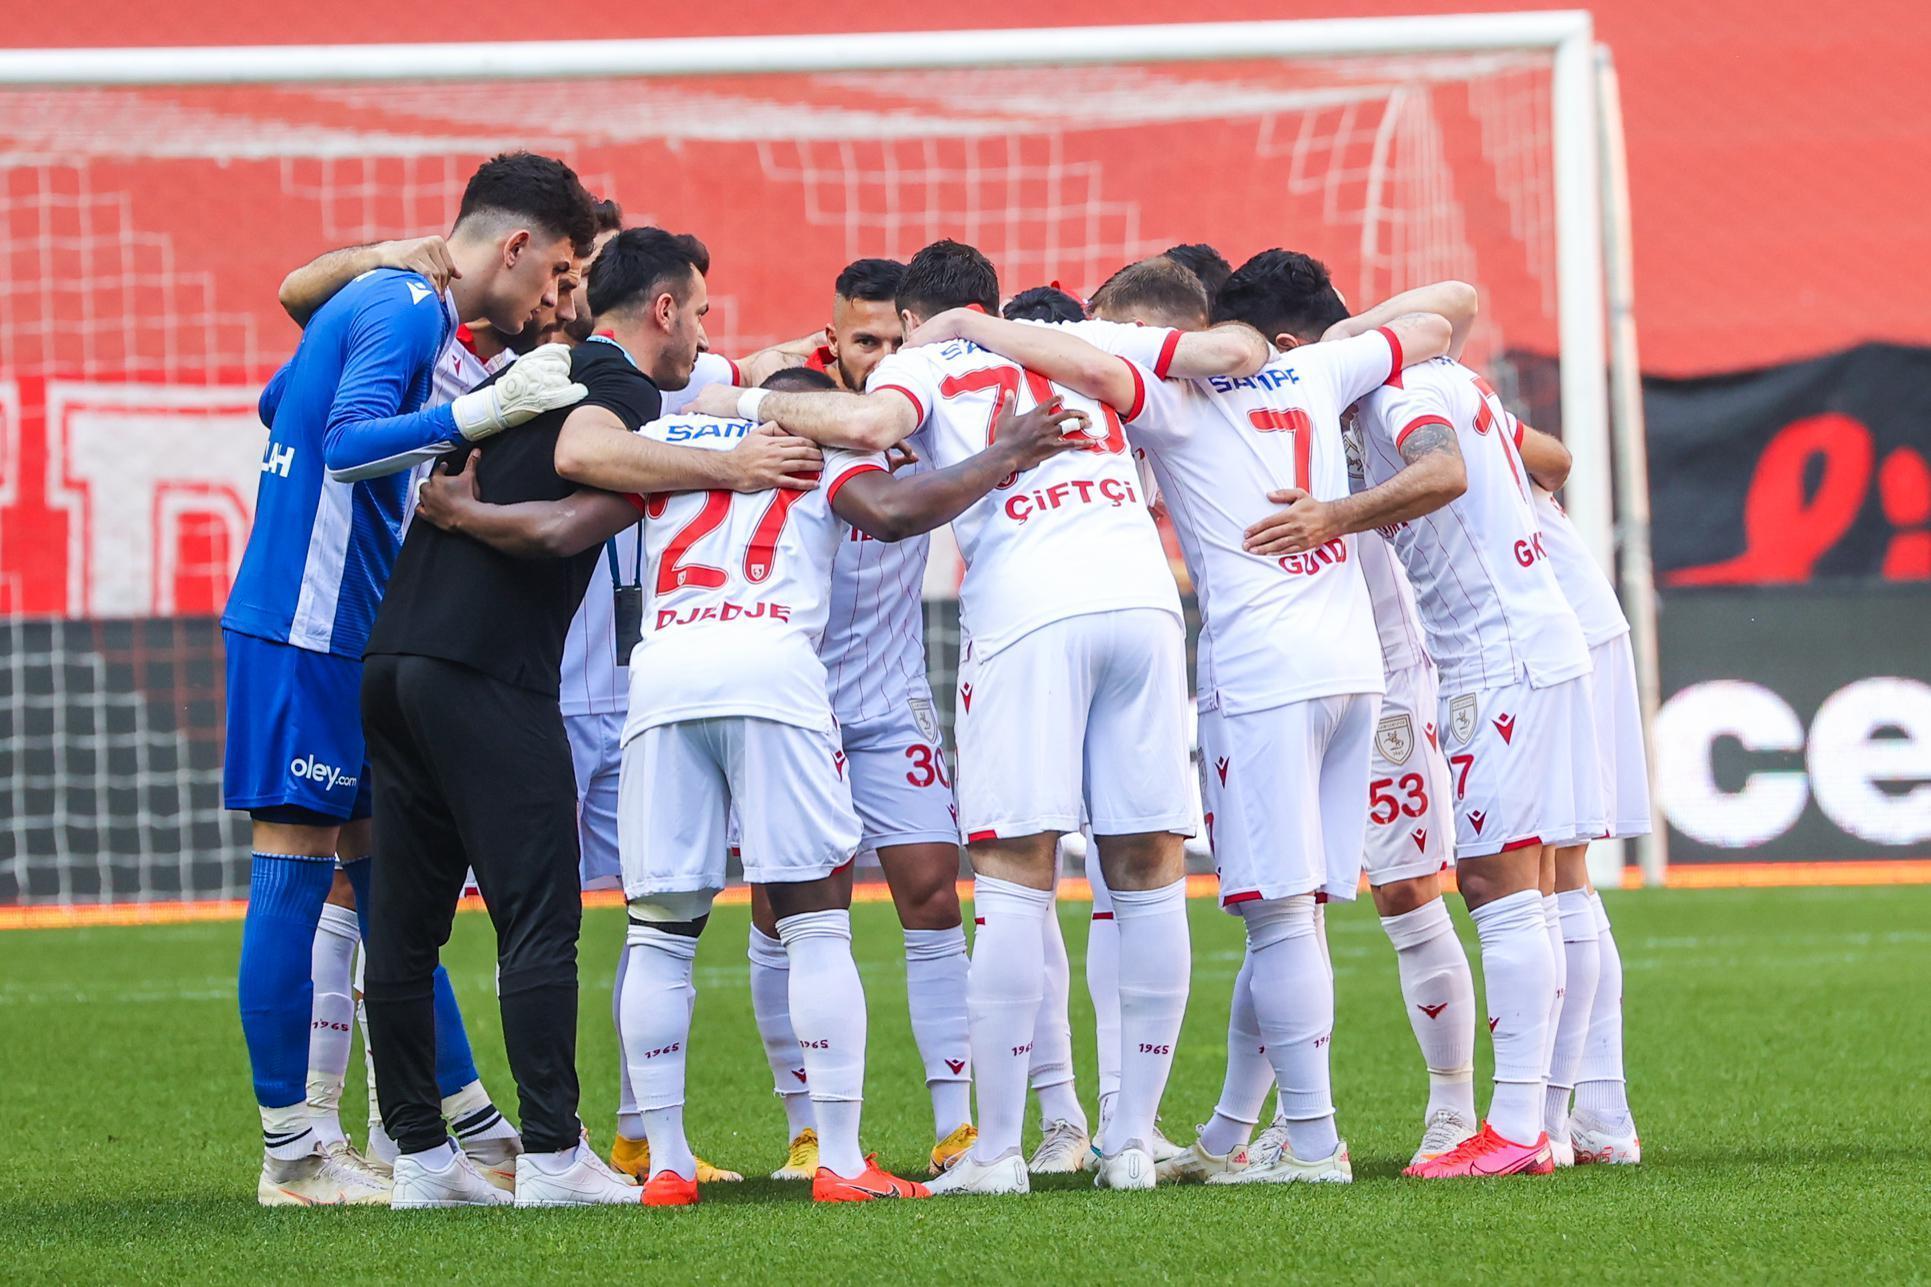 ÖZET | Samsunspor-Ankaraspor maç sonucu: 3-1